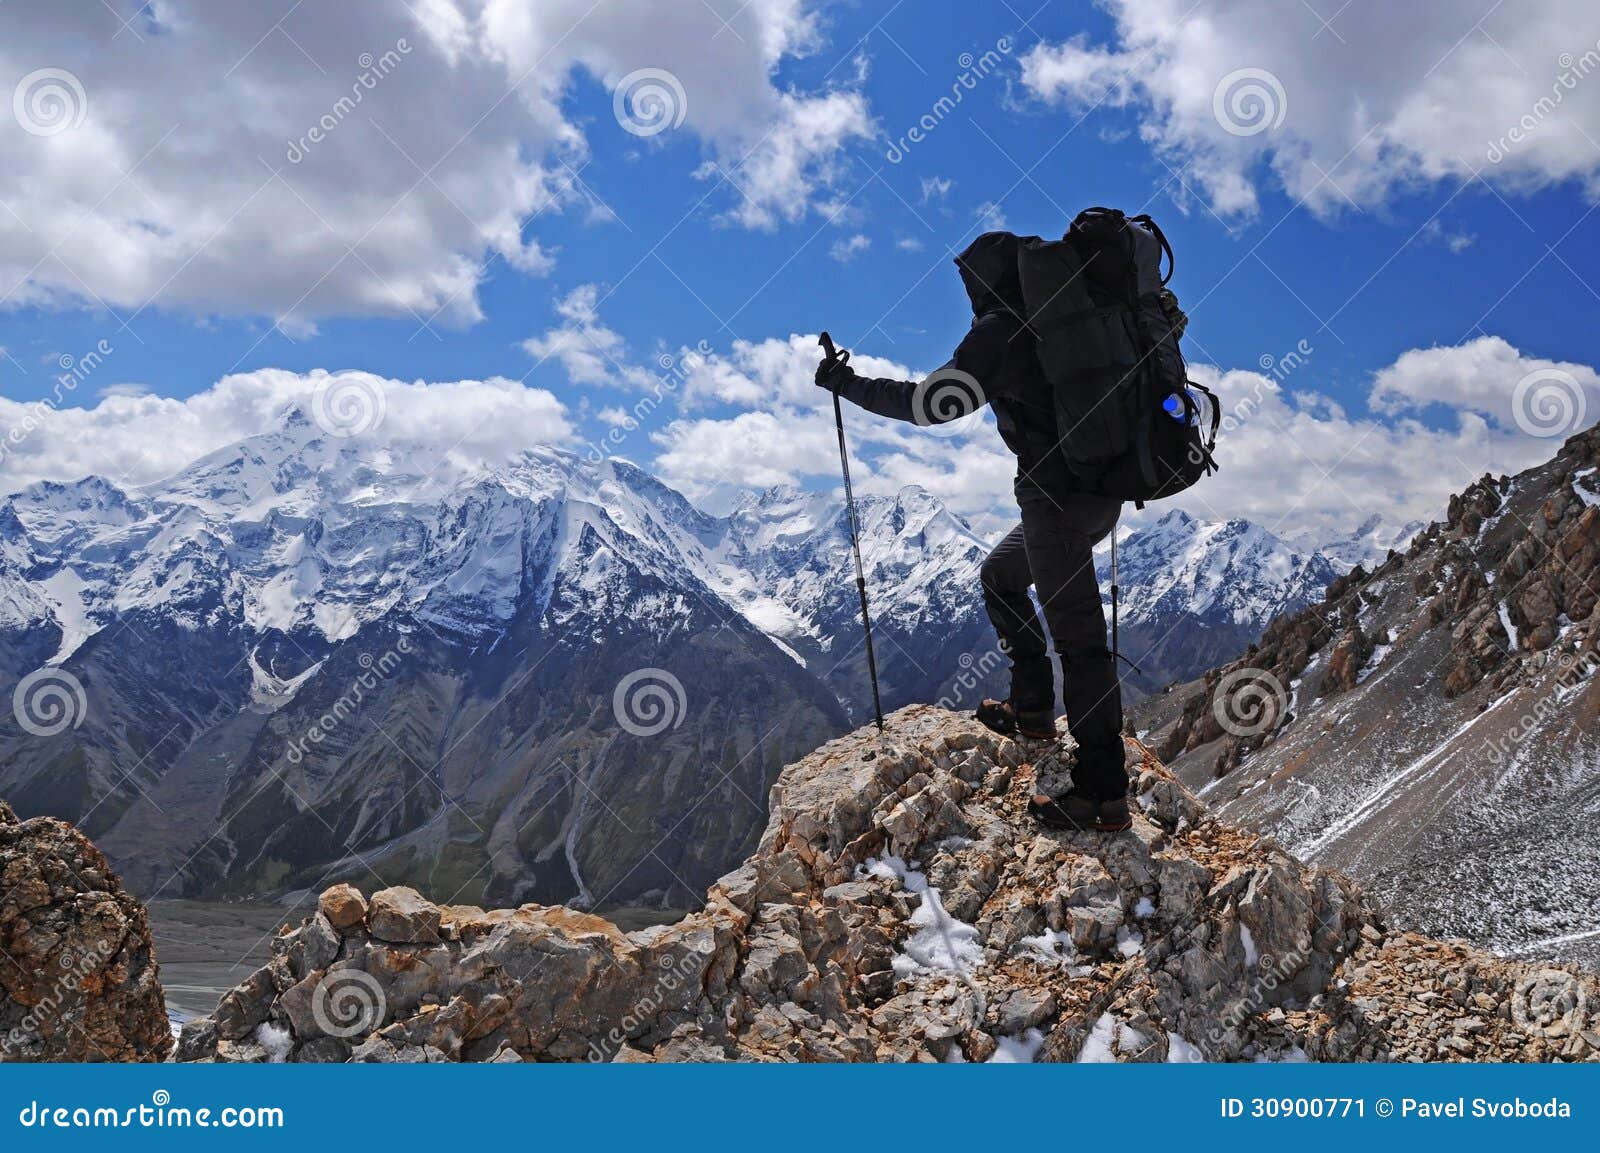 young woman trekking in mountain